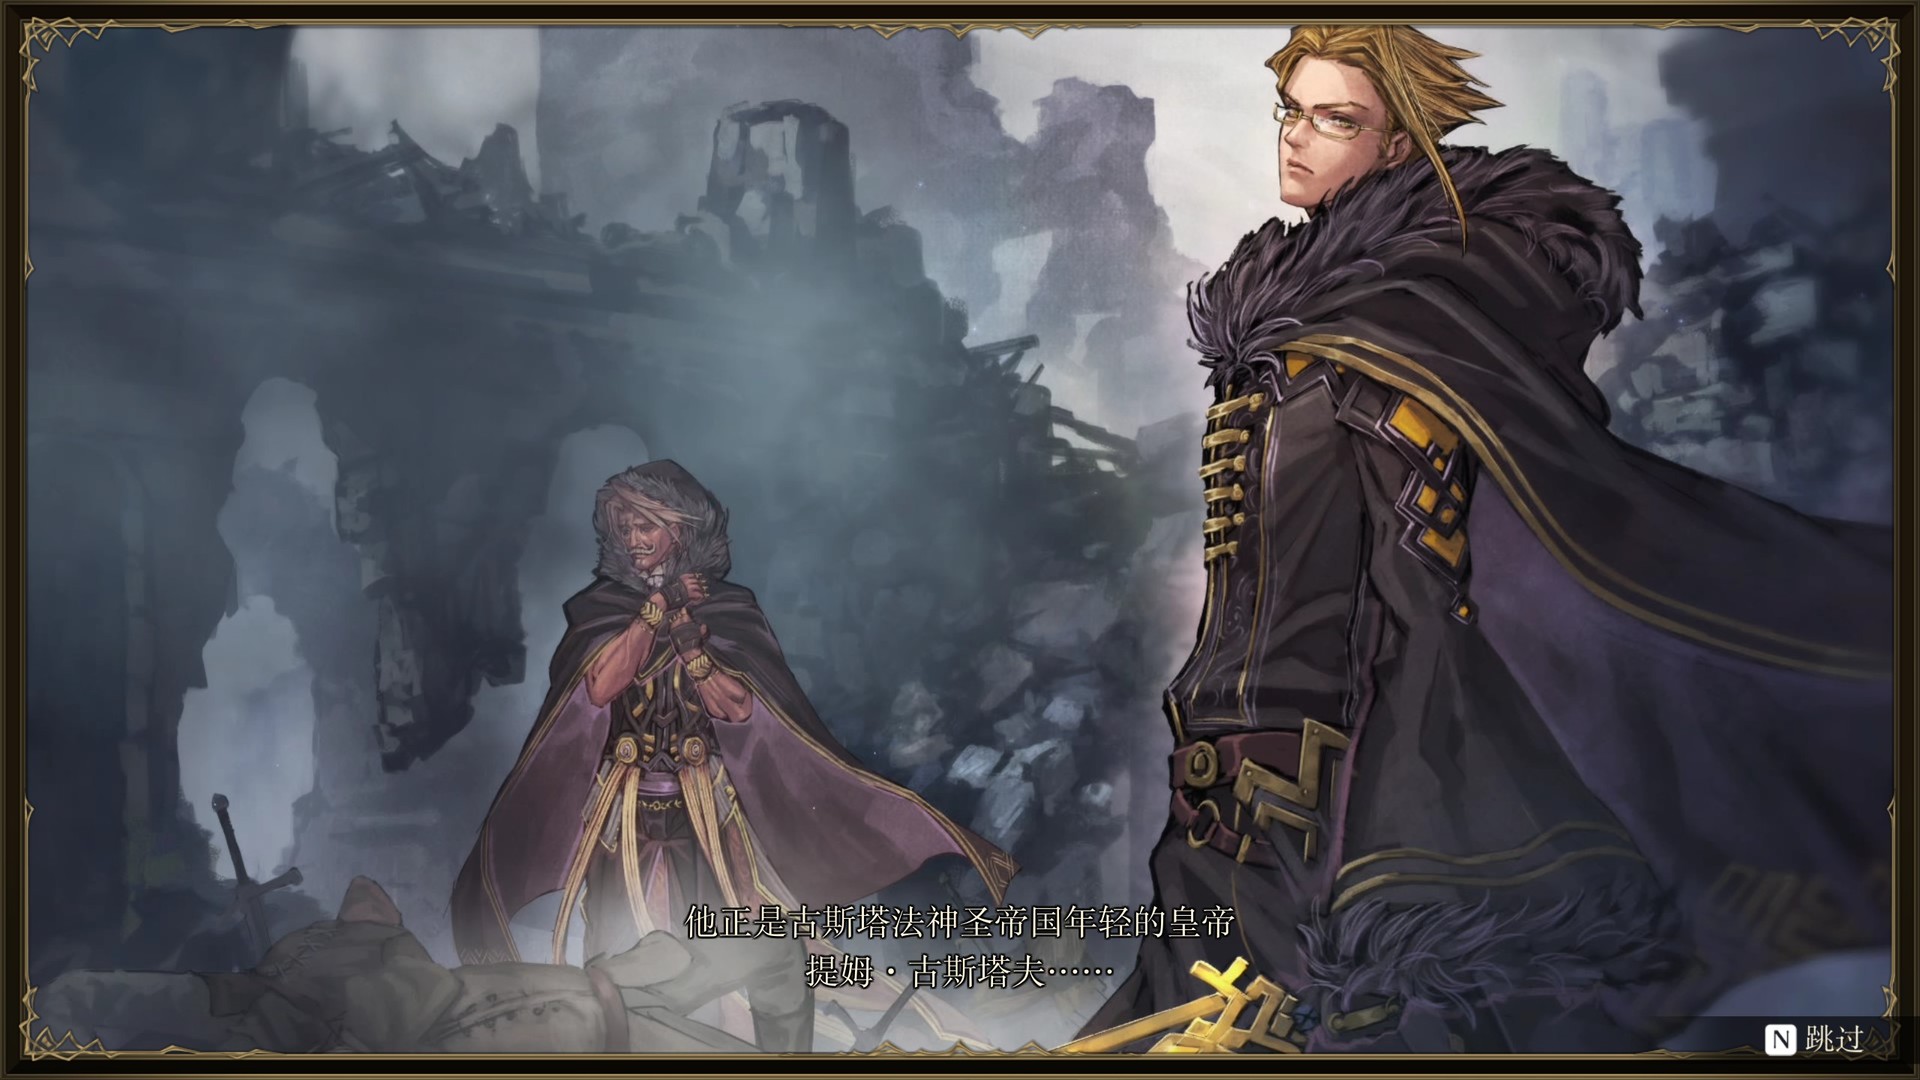 幻想大陆战记卢纳基亚传说/Brigandine The Legend of Runersia v1.0.1.1